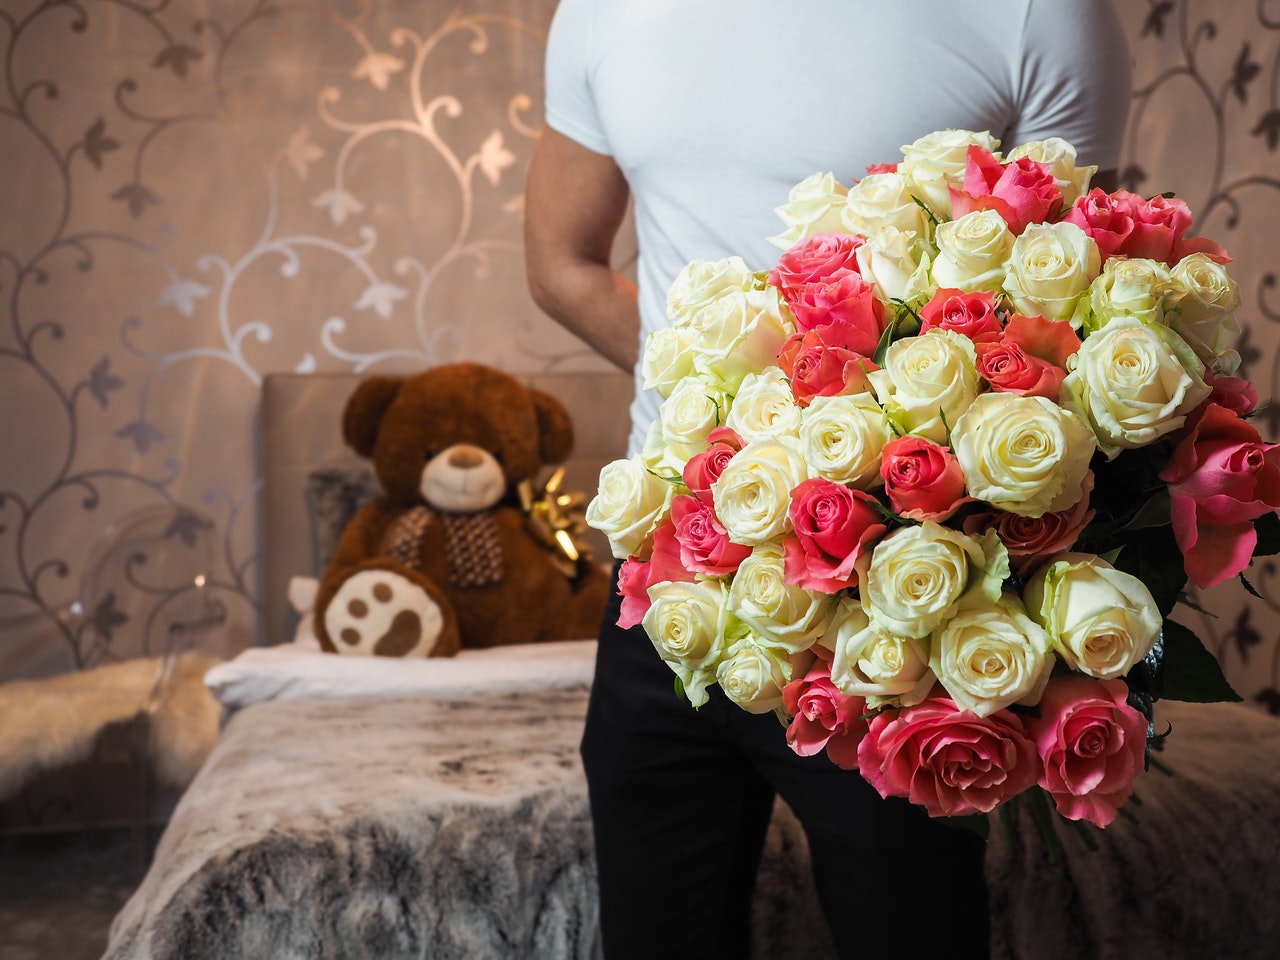 Красивые большие букеты цветов — идеальный подарок